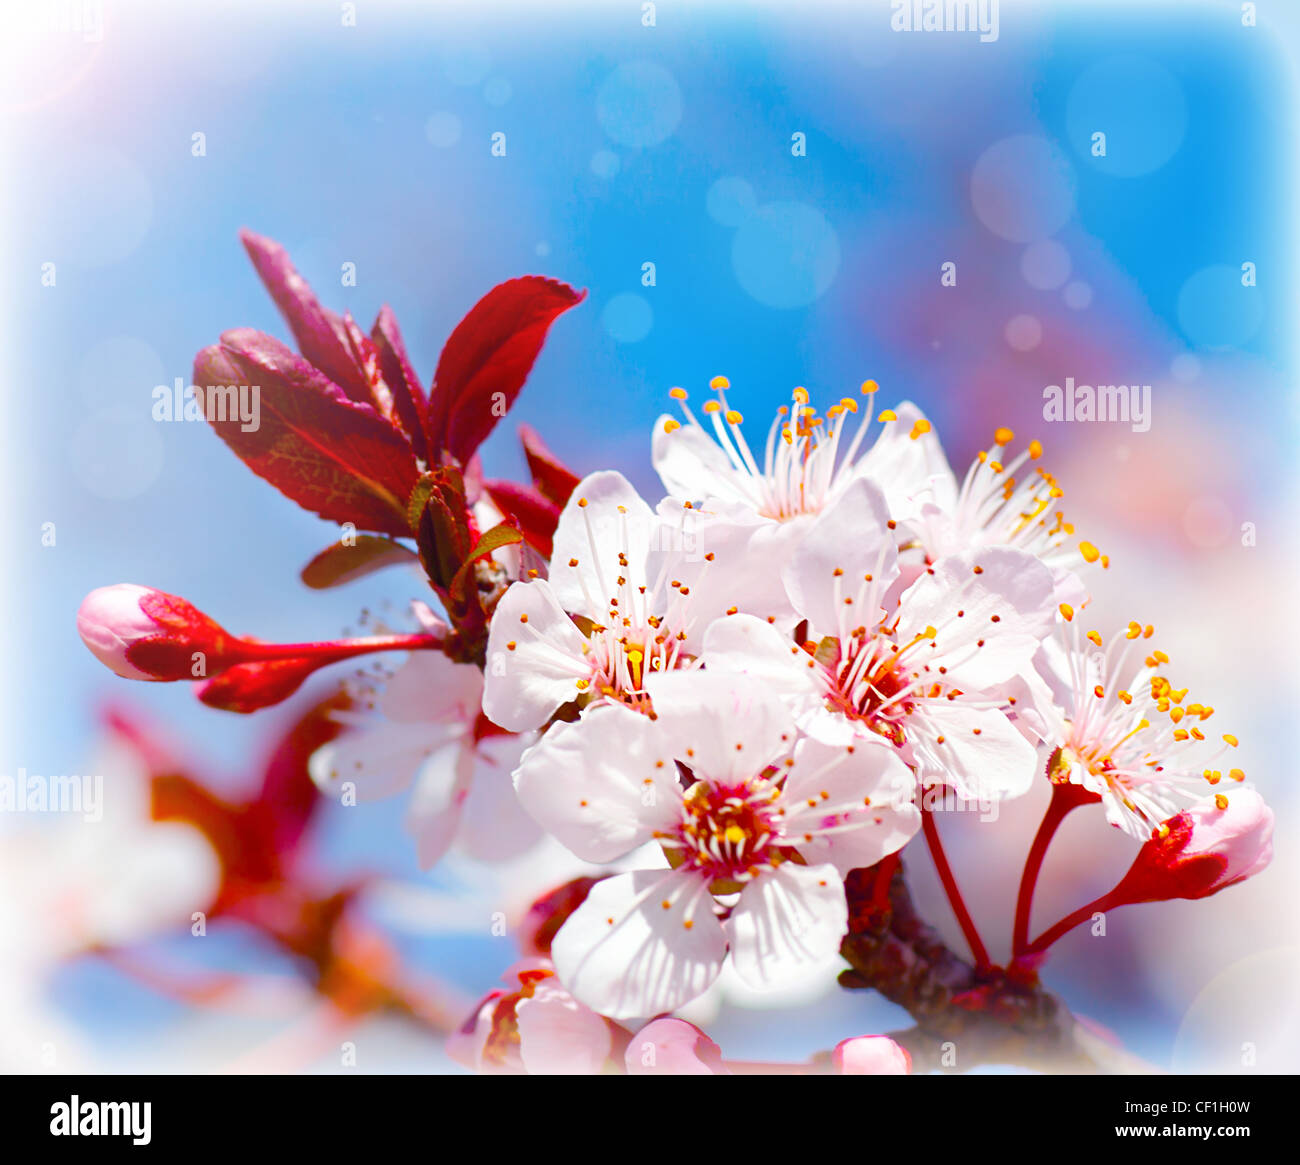 Blühender Baum im Frühling, frische weiße Blumen auf dem Zweig der Obstbaum Pflanzen blühen abstrakten Hintergrund, Saisonalität Stockfoto